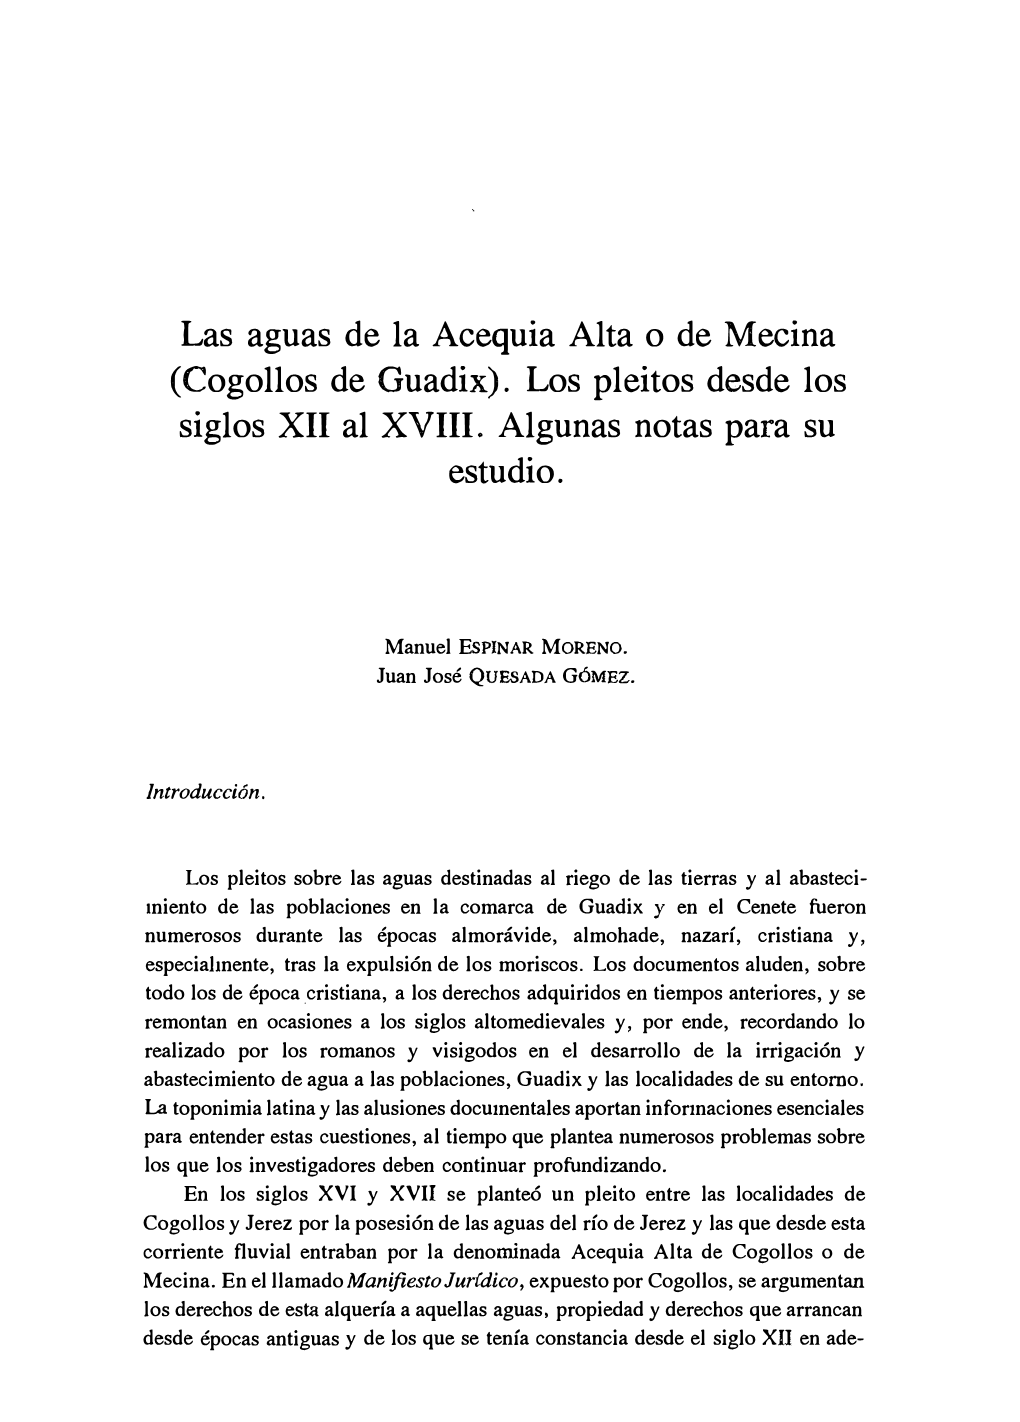 (Cogollos De Guadix). Los Pleitos Desde Los Siglos XII Al XVIII